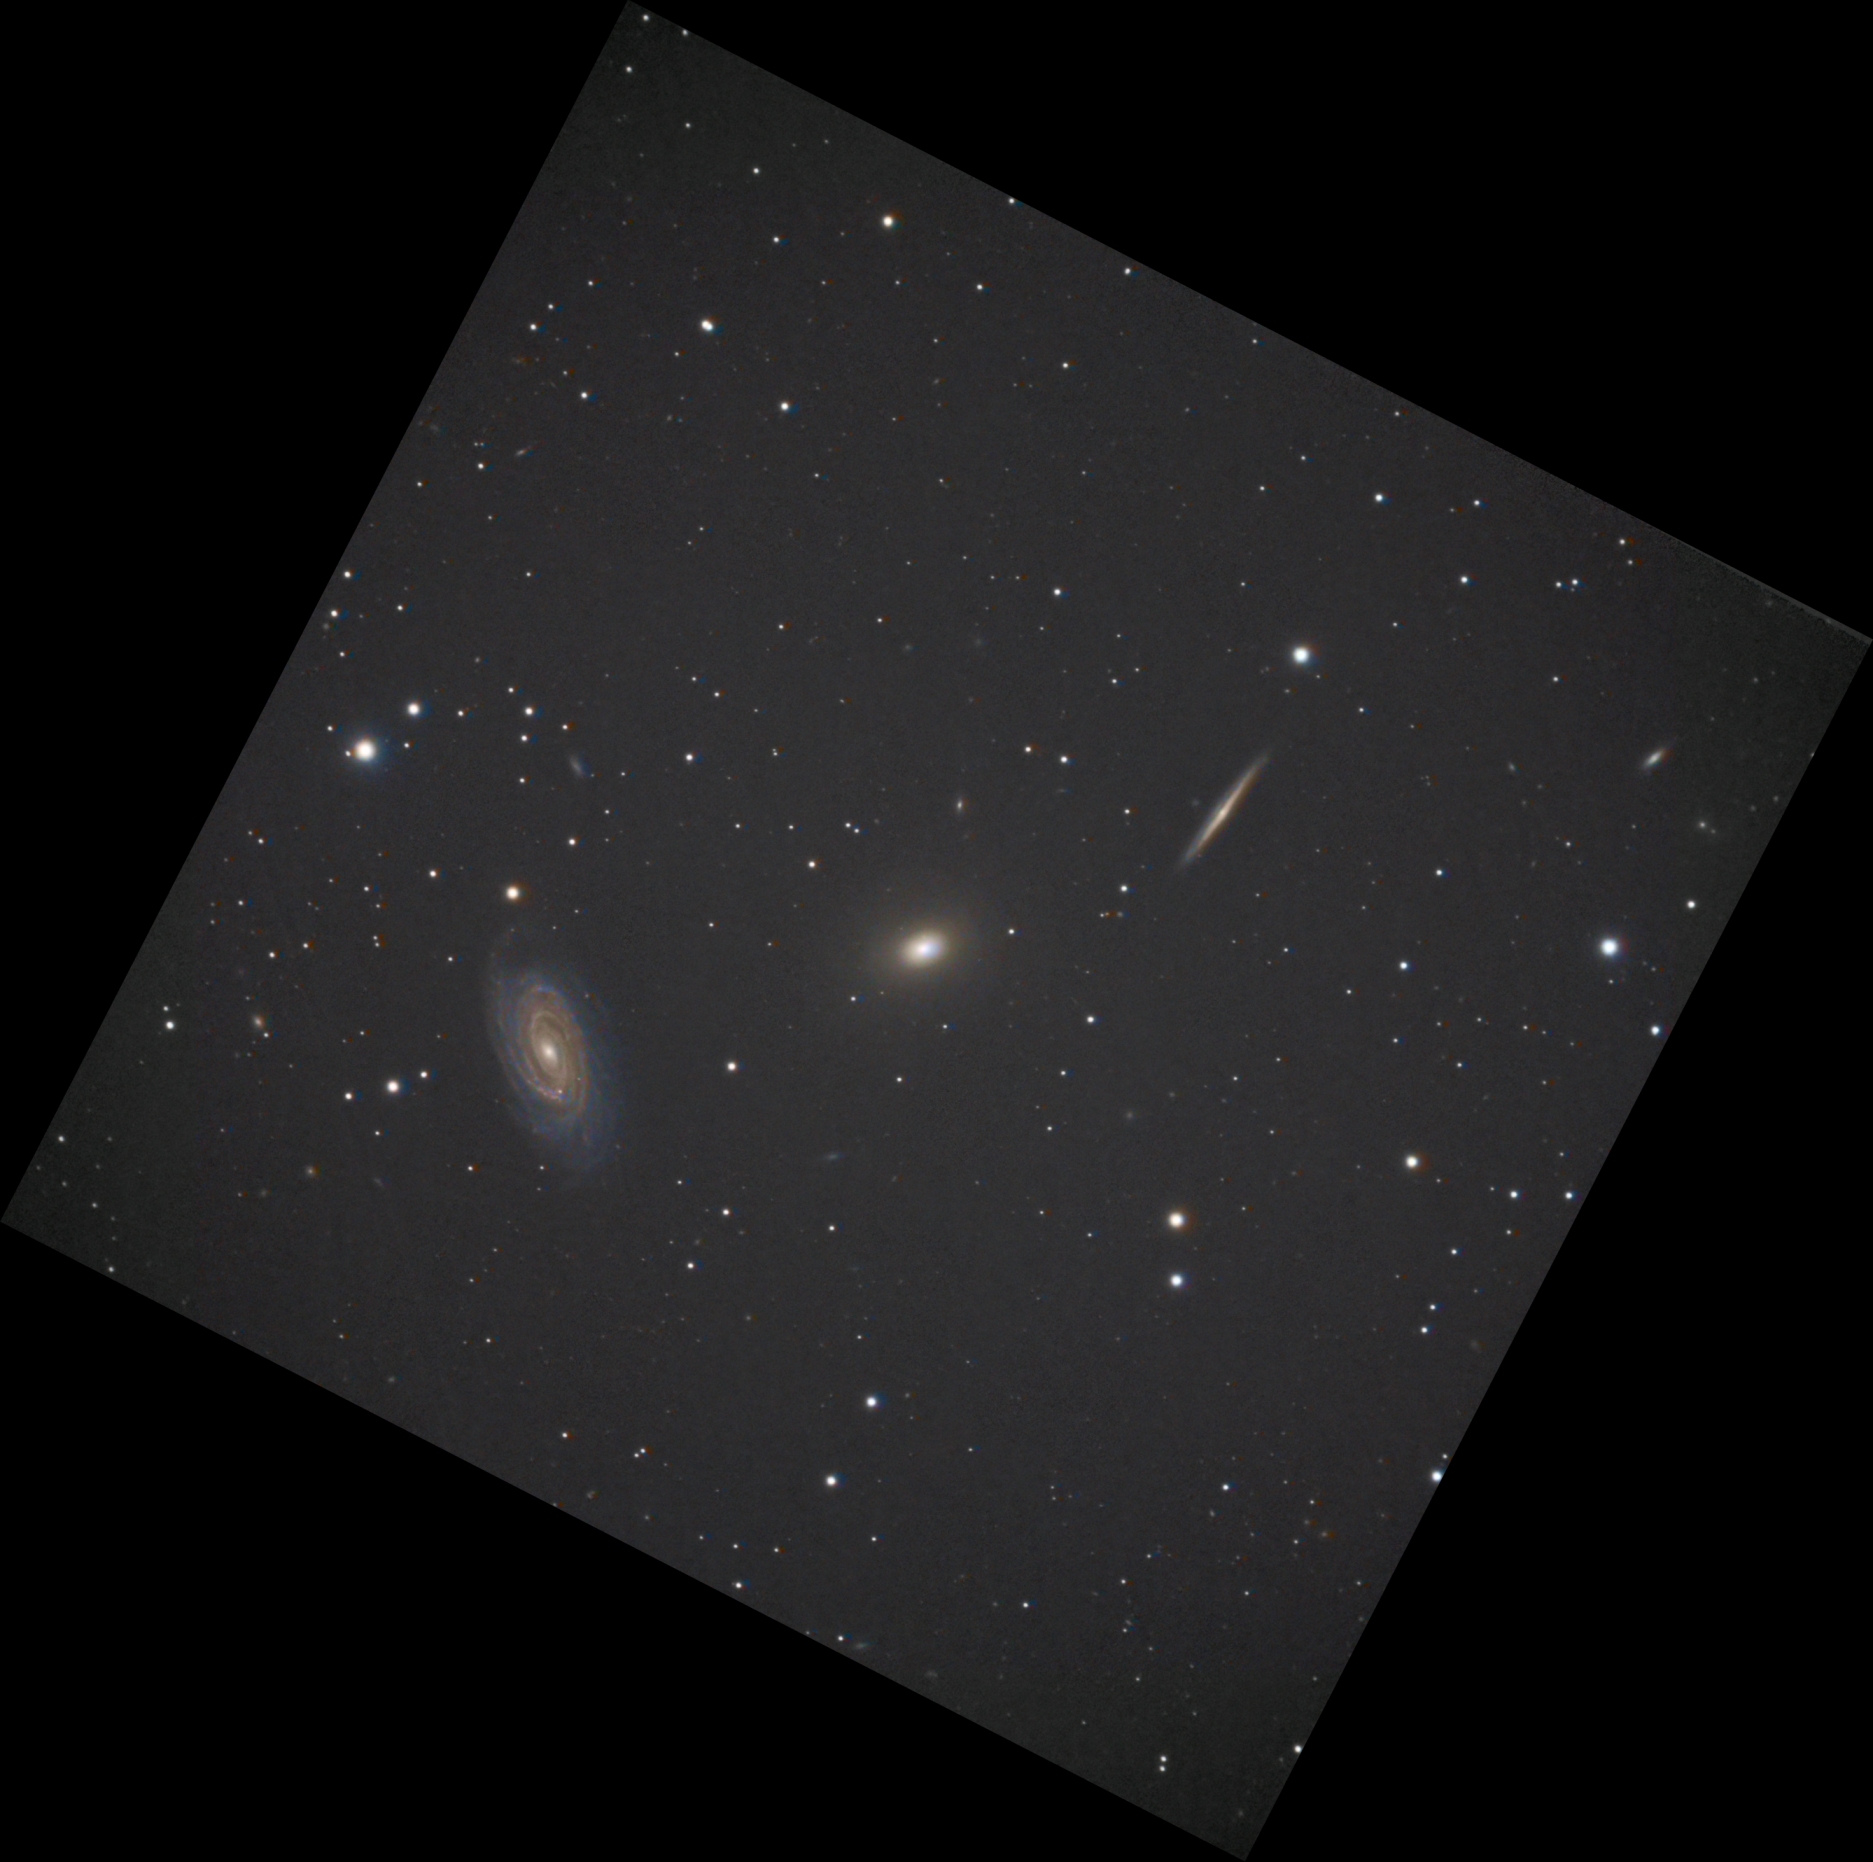 NGC5982_116x10s_10x120s_nodof.thumb.jpg.0a9fd4d2876e2202e4d5a66db6f675a2.jpg.d933b8232c1d94283e797d8a1bd84304.jpg